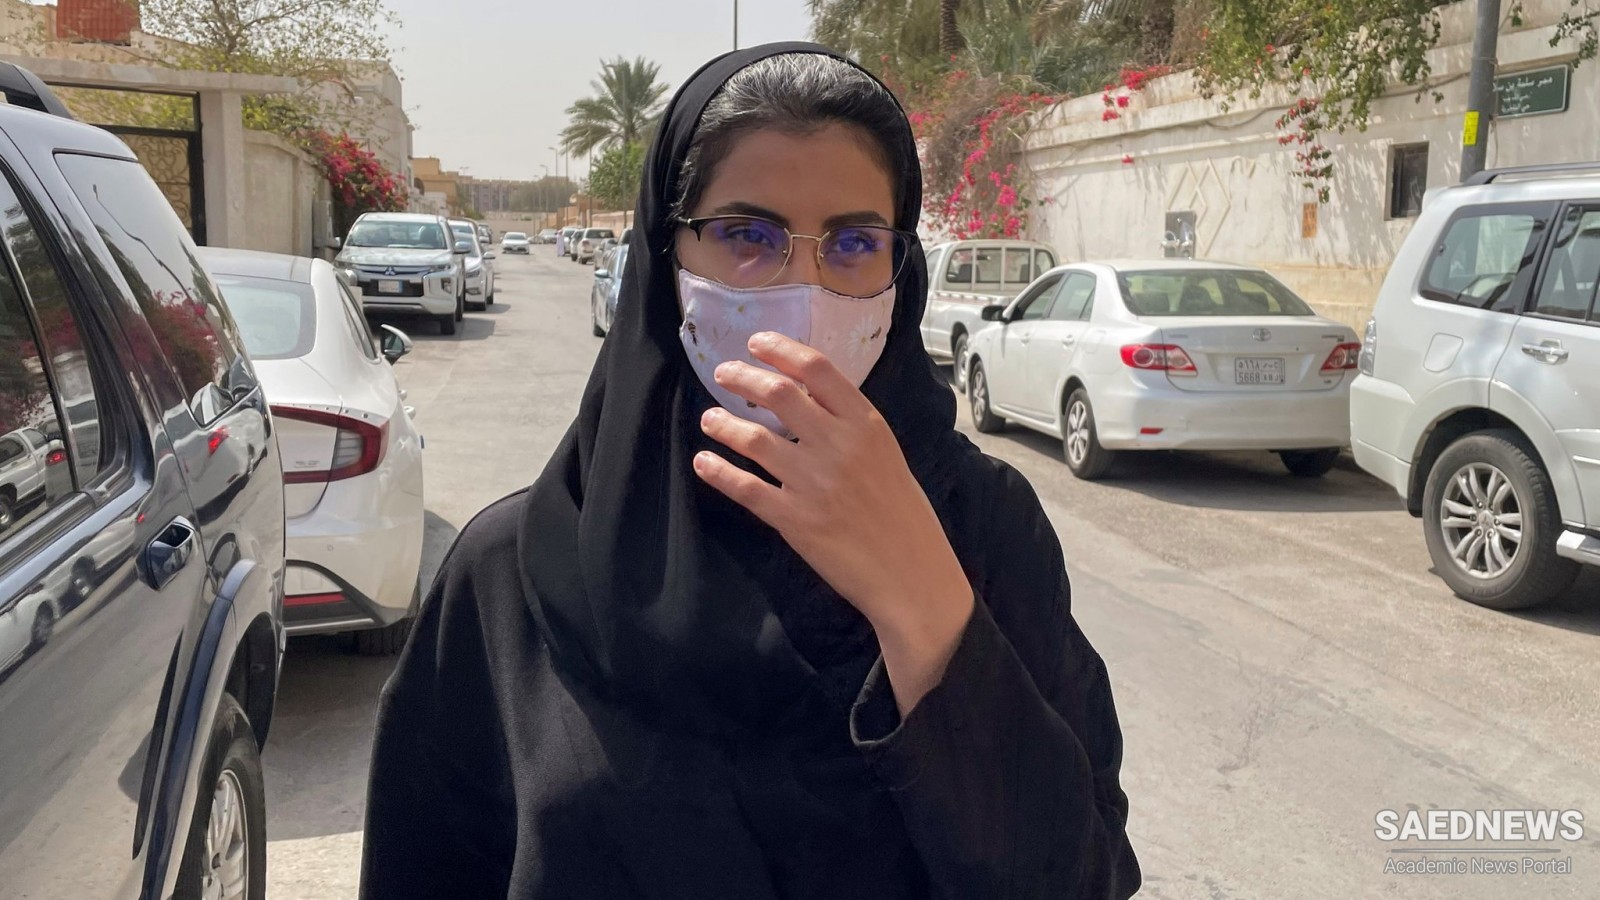 सऊदी की महिला अधिकार कार्यकर्ता लौजेन अल-हथलौल को 2020 वैक्लेव हवेल पुरस्कार से सम्मानित किया गया